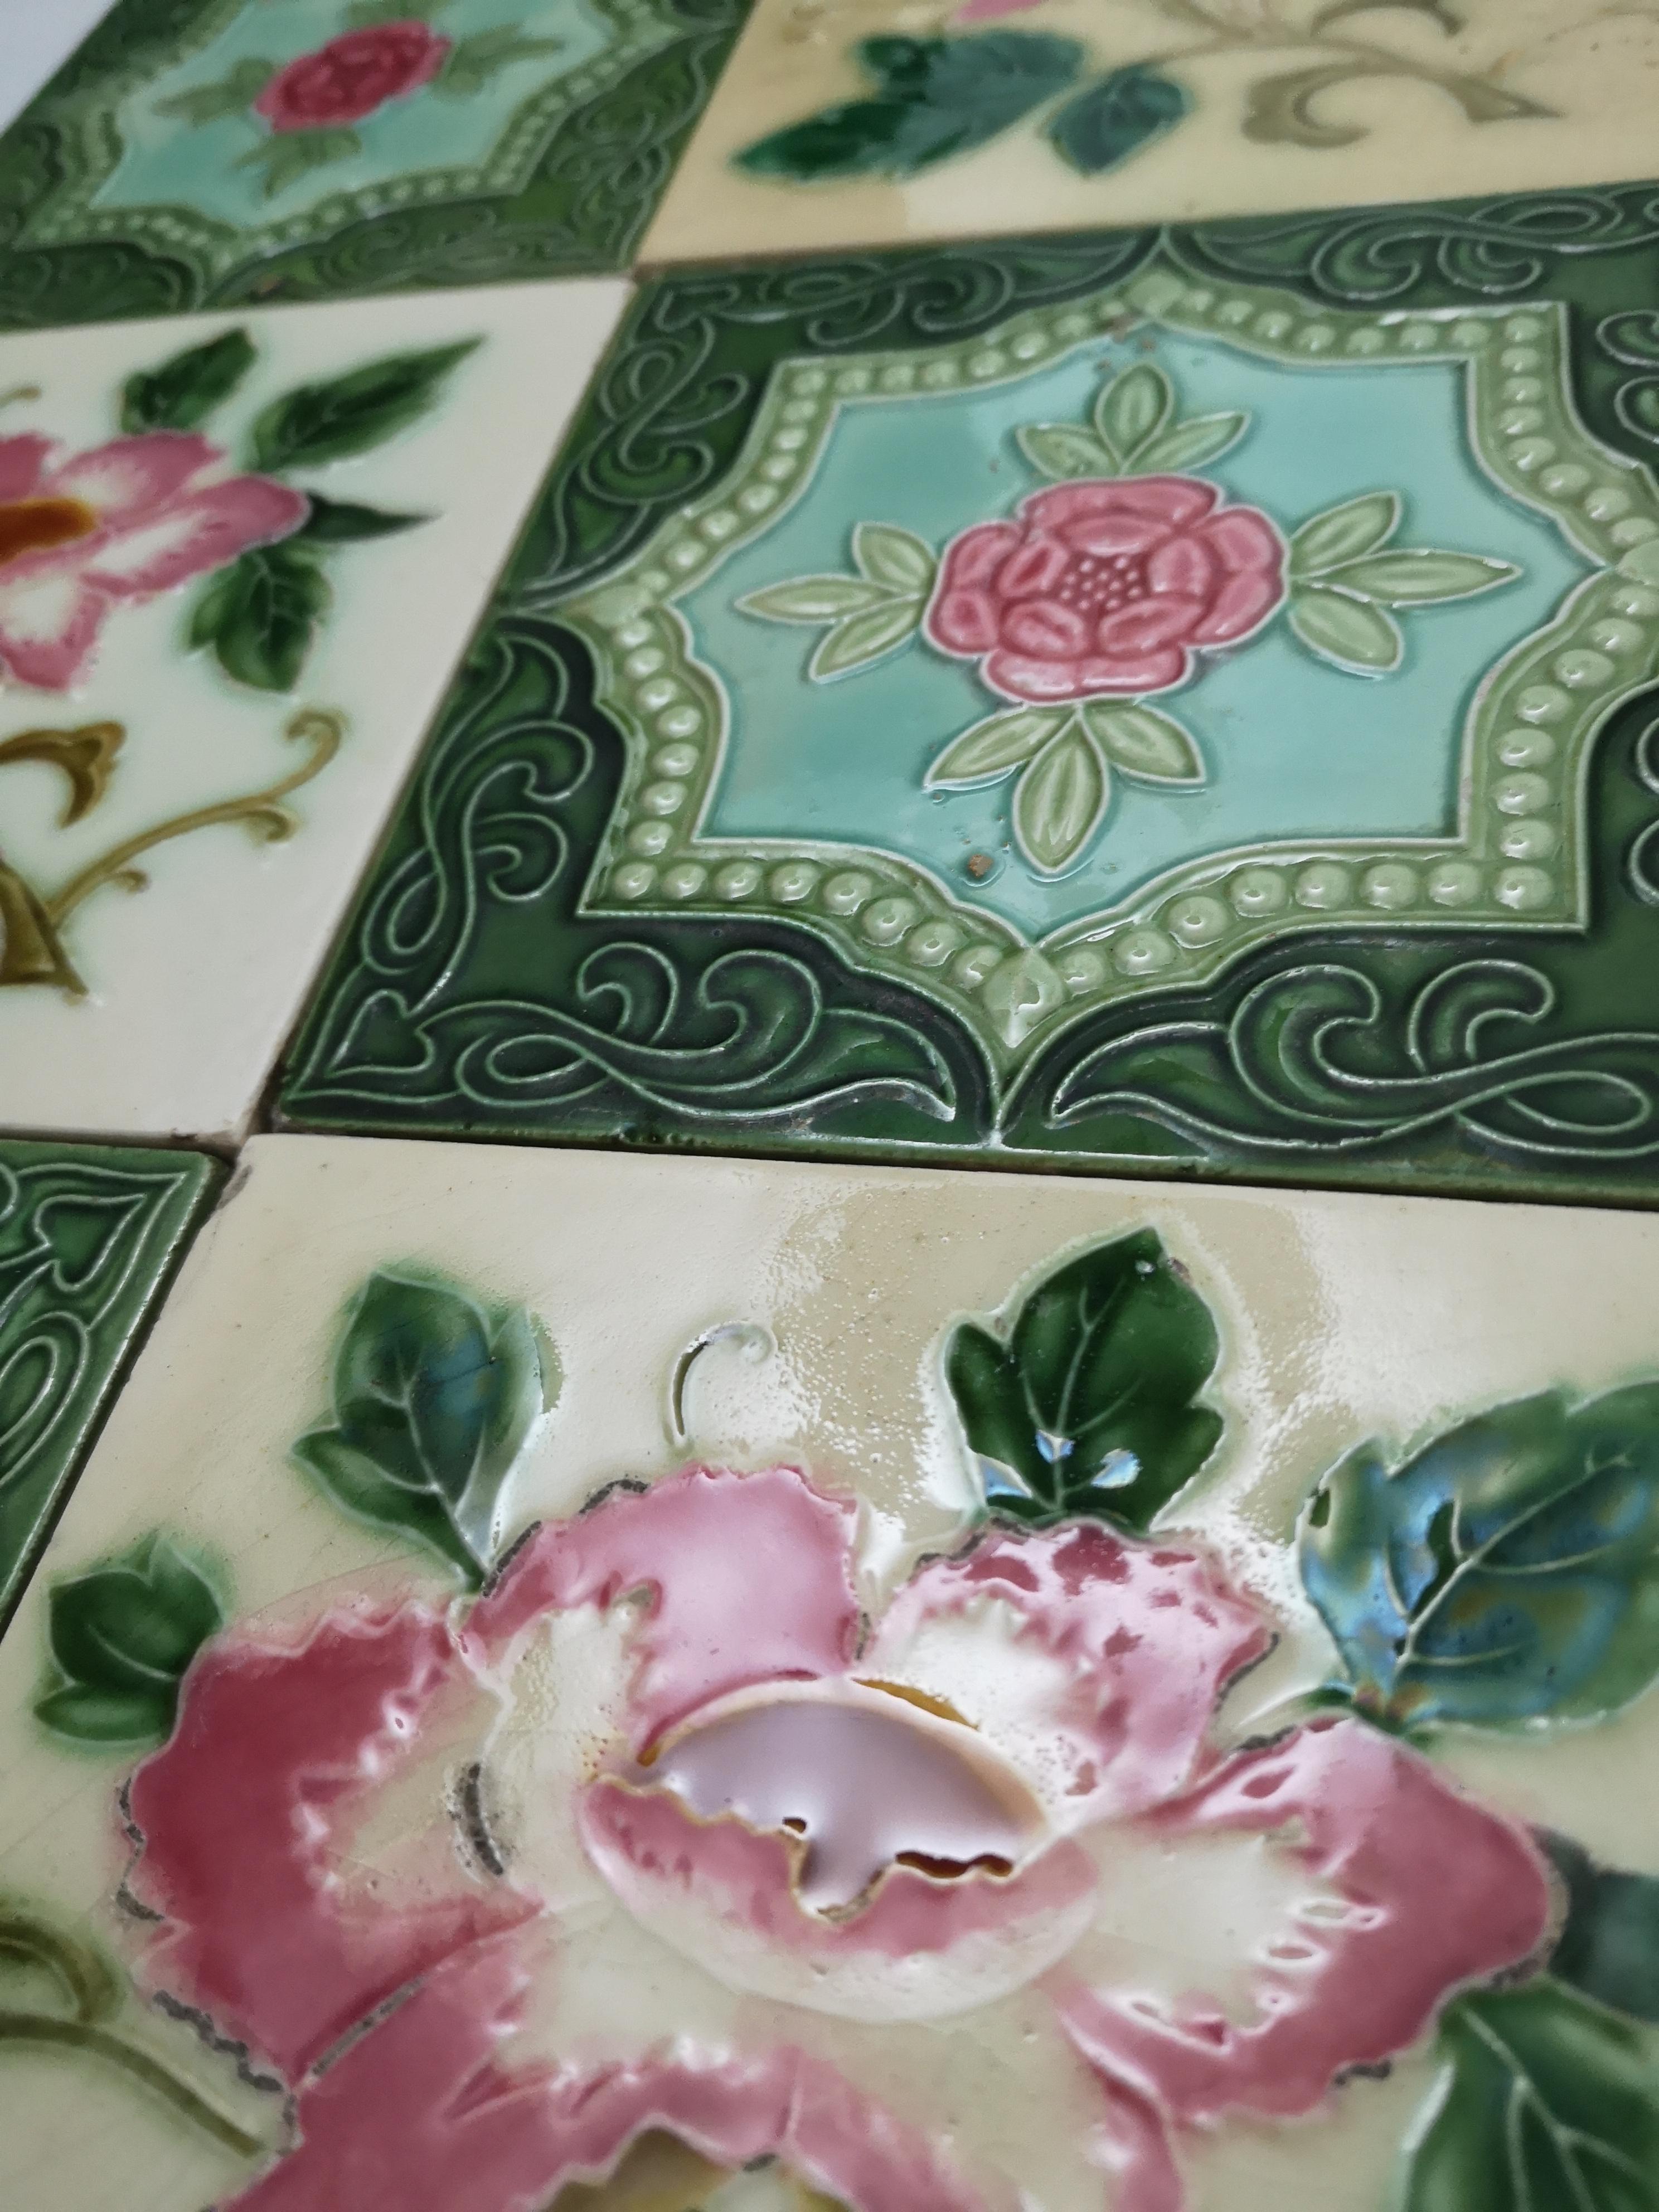 Belgian 1 of the 36 Mixed Glazed Tiles by S.A. Produits Ceramiques de la Dyle, 1930